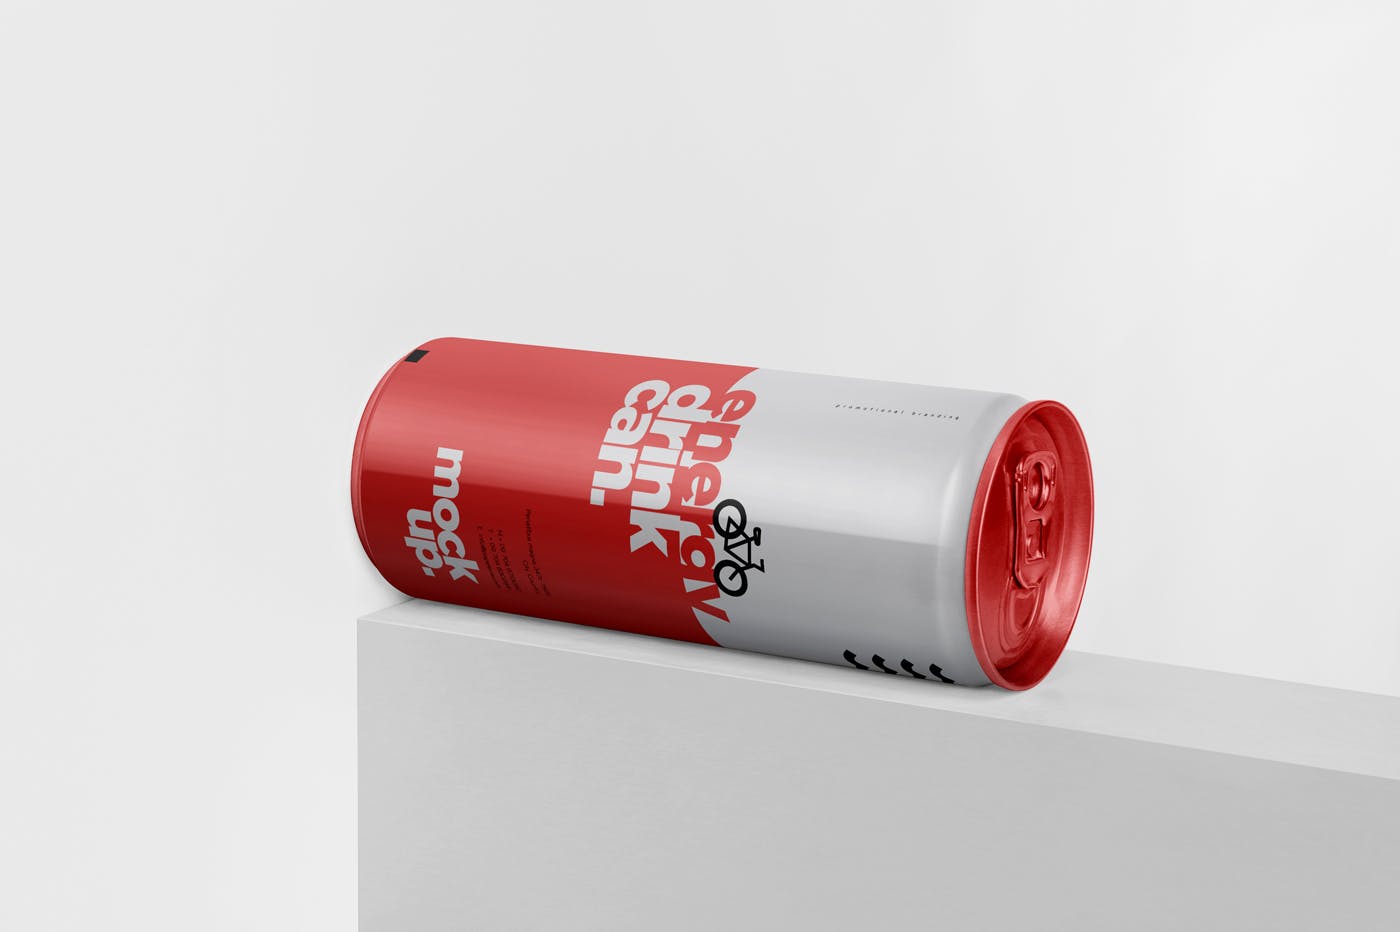 能量饮料易拉罐罐头外观设计第一素材精选模板 Energy Drink Can Mock-Up – 250 ml插图(2)